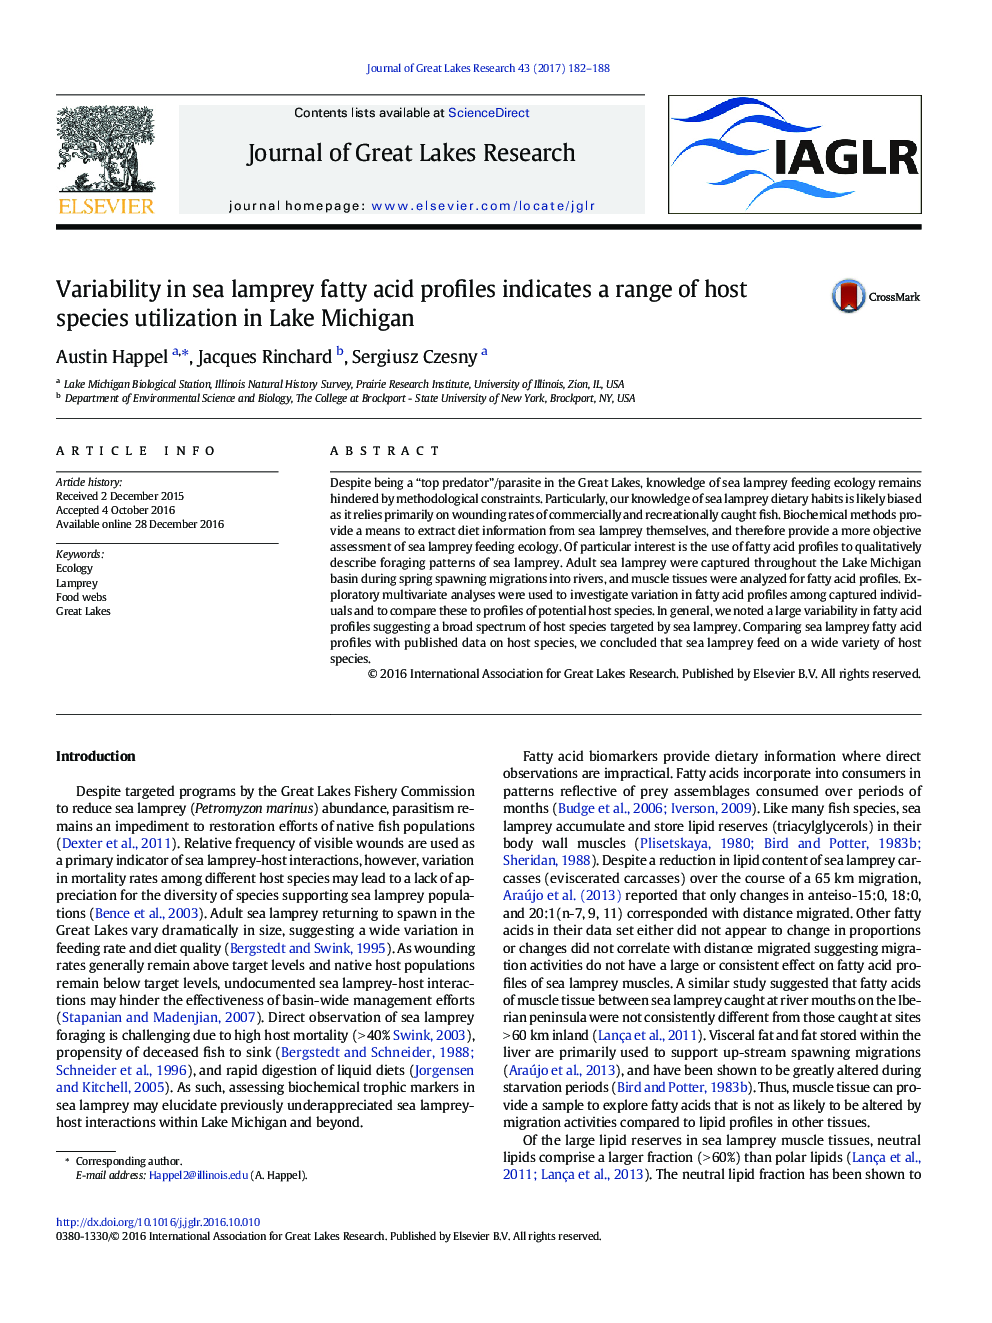 تغییرات در پروفیل های اسید چرب دریایی نشان دهنده طیف وسیعی از استفاده از گونه های میزبان در دریاچه میشیگان است 